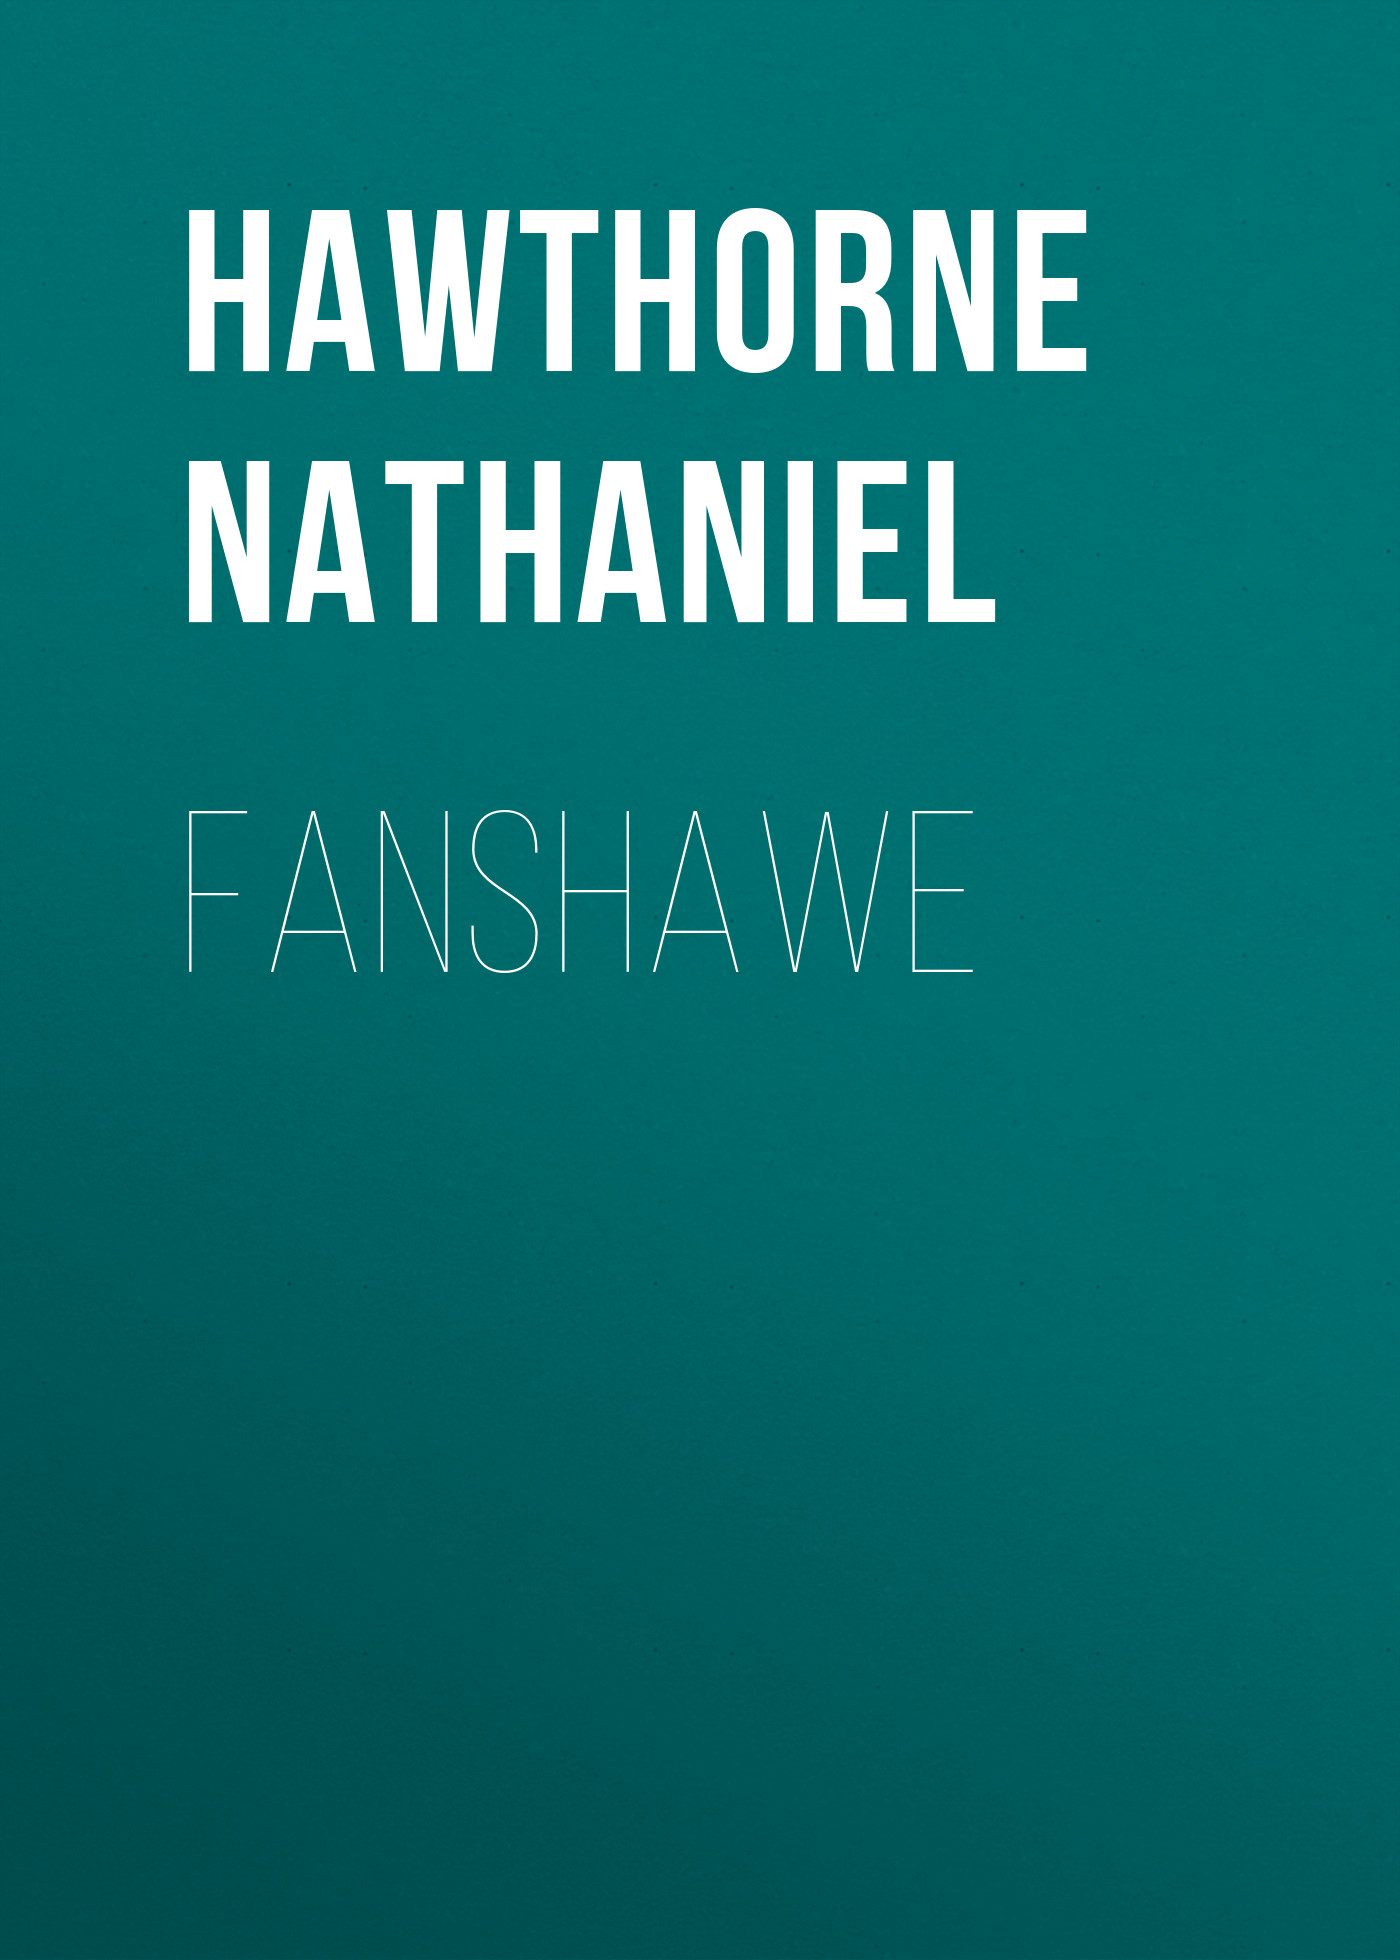 Книга Fanshawe из серии , созданная Nathaniel Hawthorne, может относится к жанру Литература 19 века, Зарубежная старинная литература, Зарубежная классика. Стоимость электронной книги Fanshawe с идентификатором 25560596 составляет 0 руб.